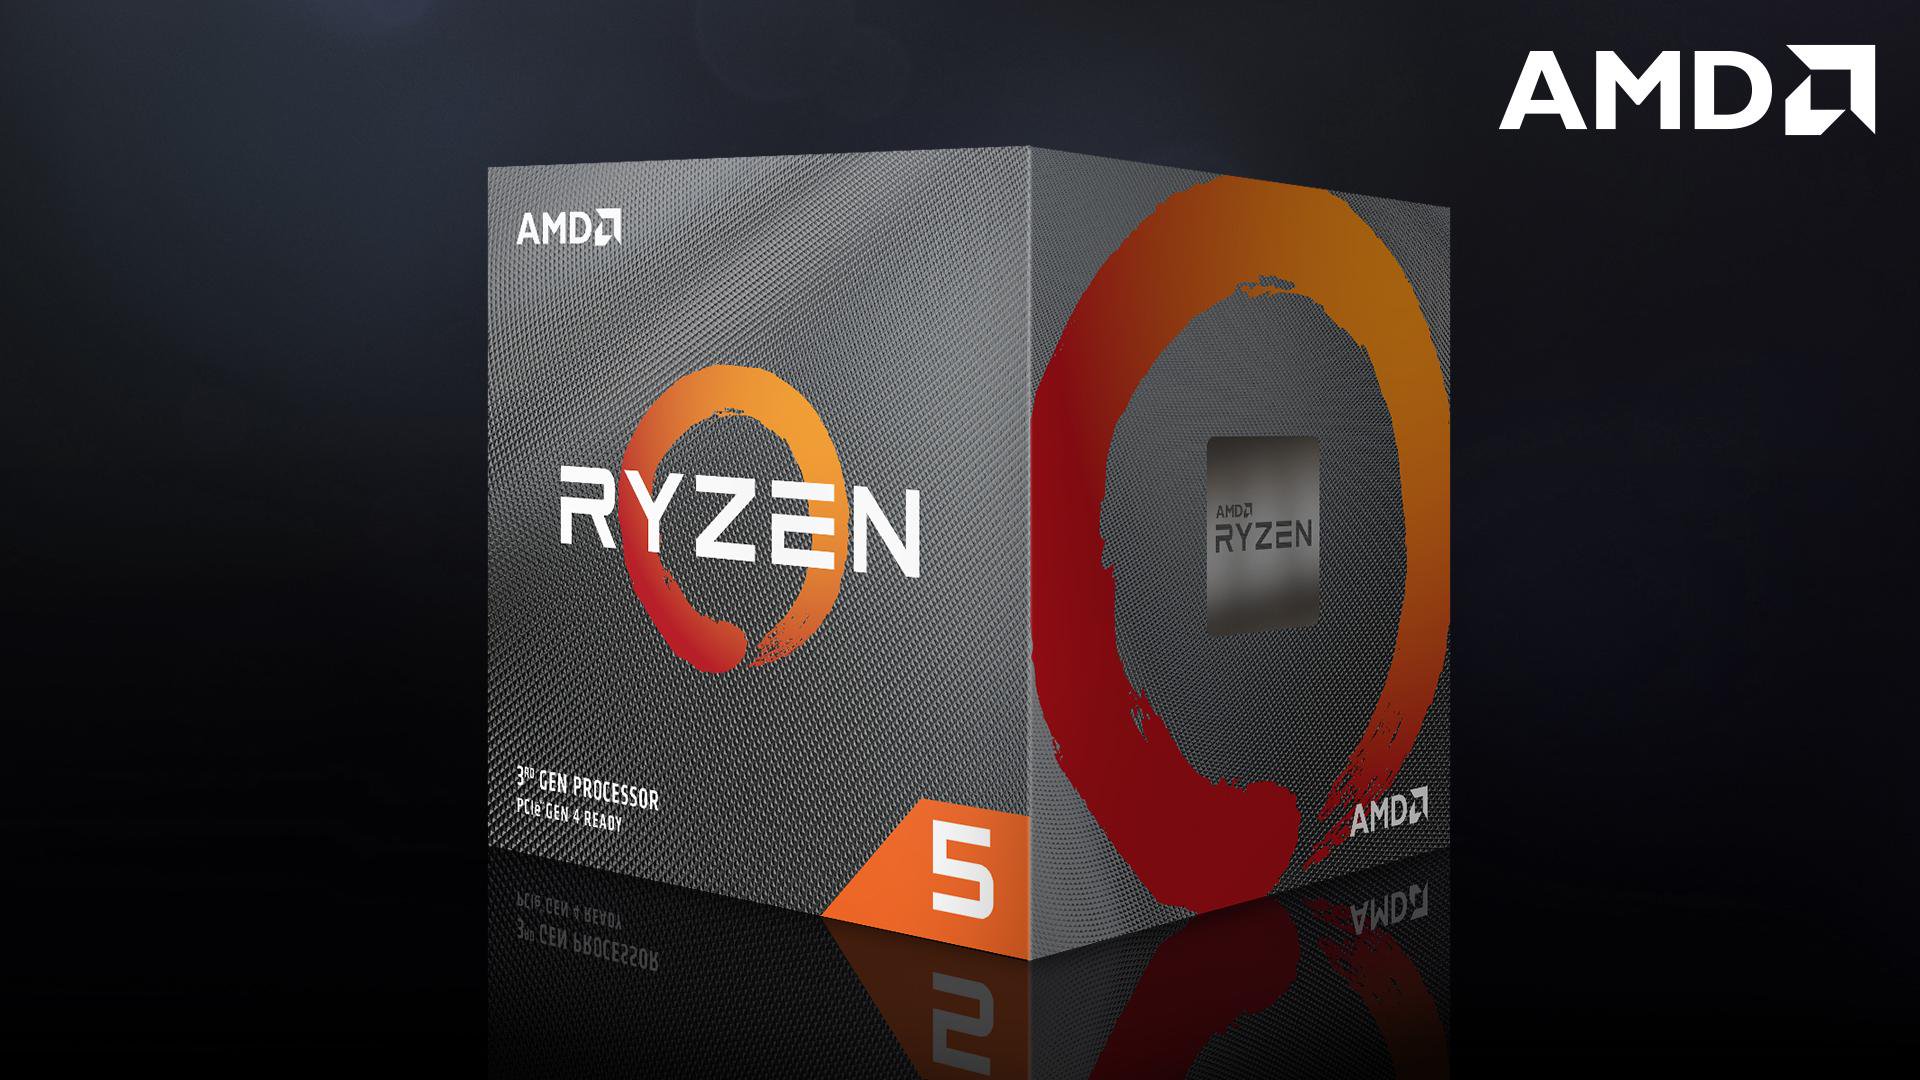 Kết quả hình ảnh cho CPU AMD Ryzen 5 3500